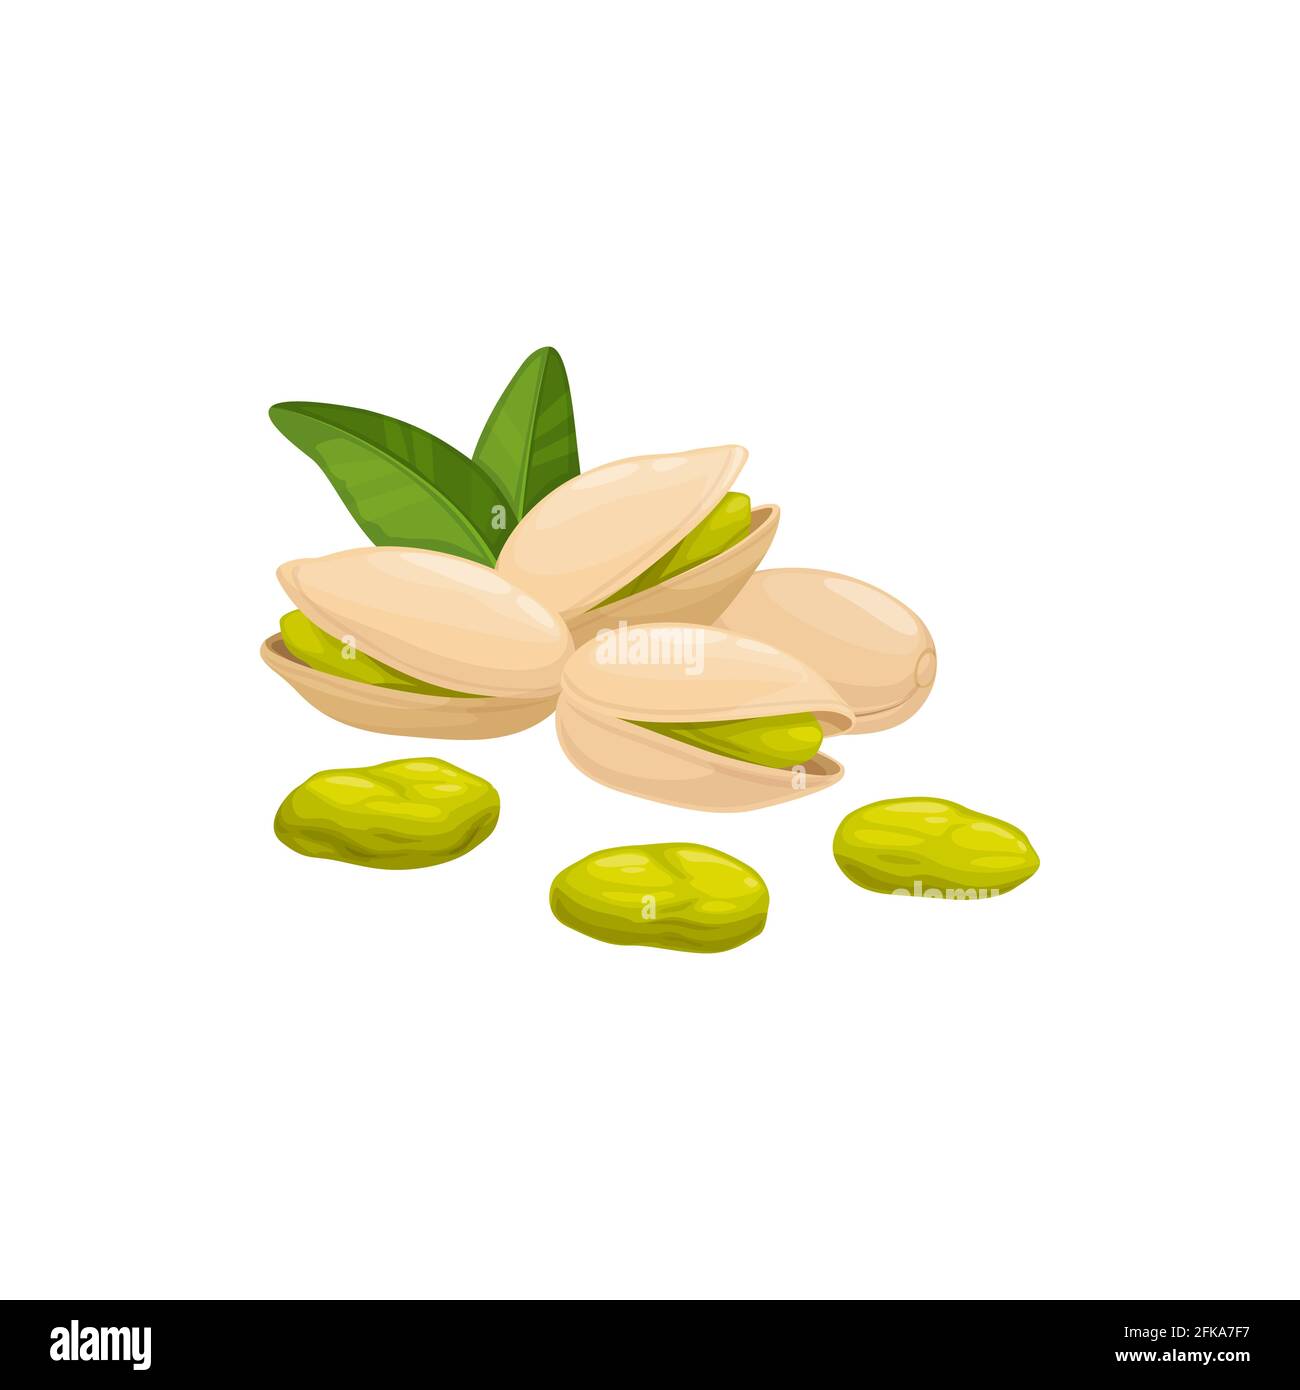 Pistazien-Nuss in Schale isoliert Lebensmittel Snack geschält und ungeschält, grüne Blätter. Vector vegetarische natürlich geröstete Pistazie oder Pistazie mit grünem Samen. Stock Vektor